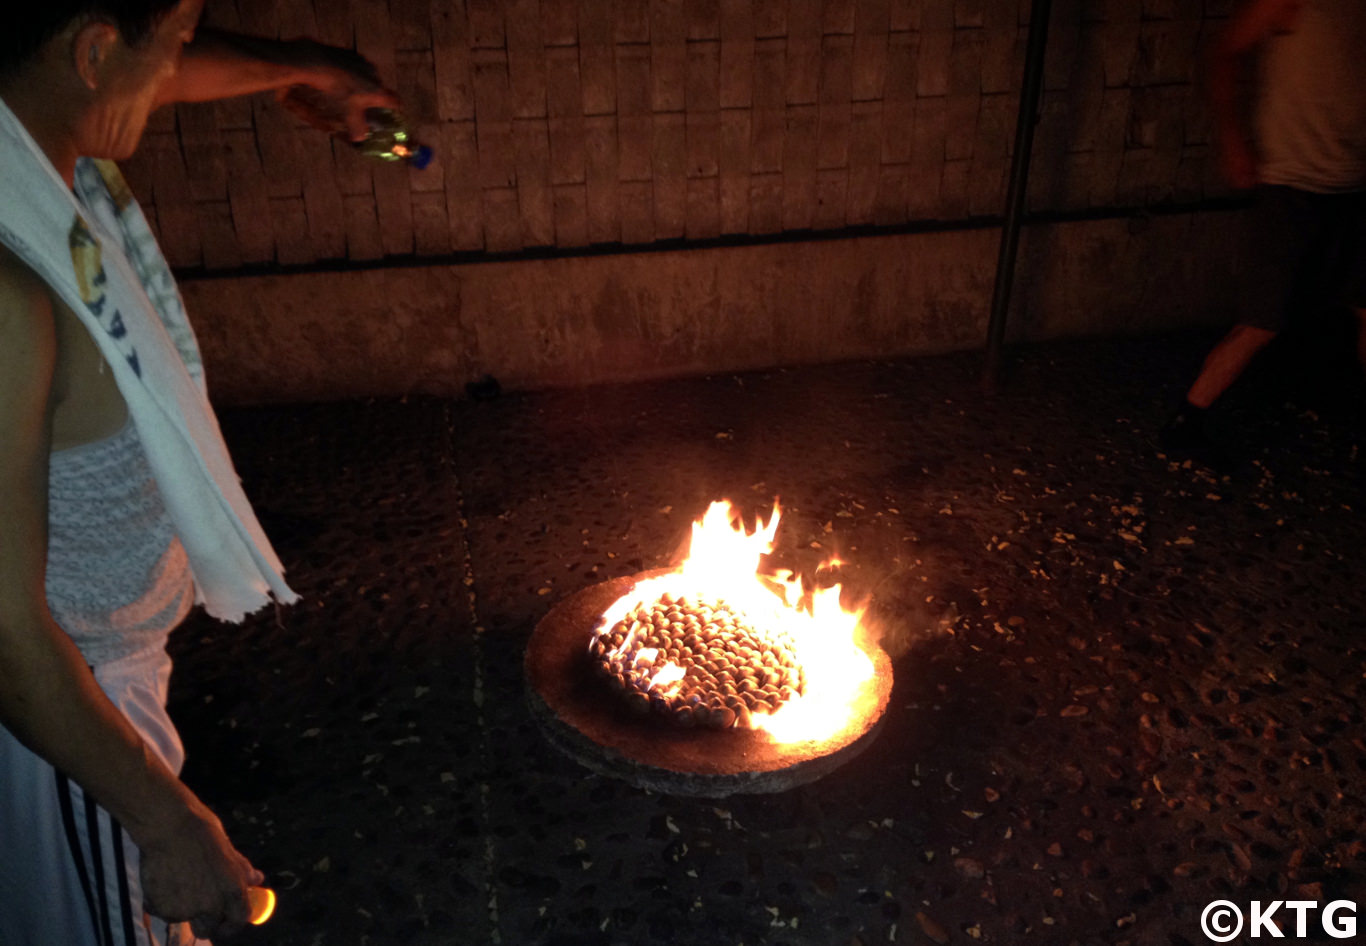 Gasoline clam barbecue in North Korea